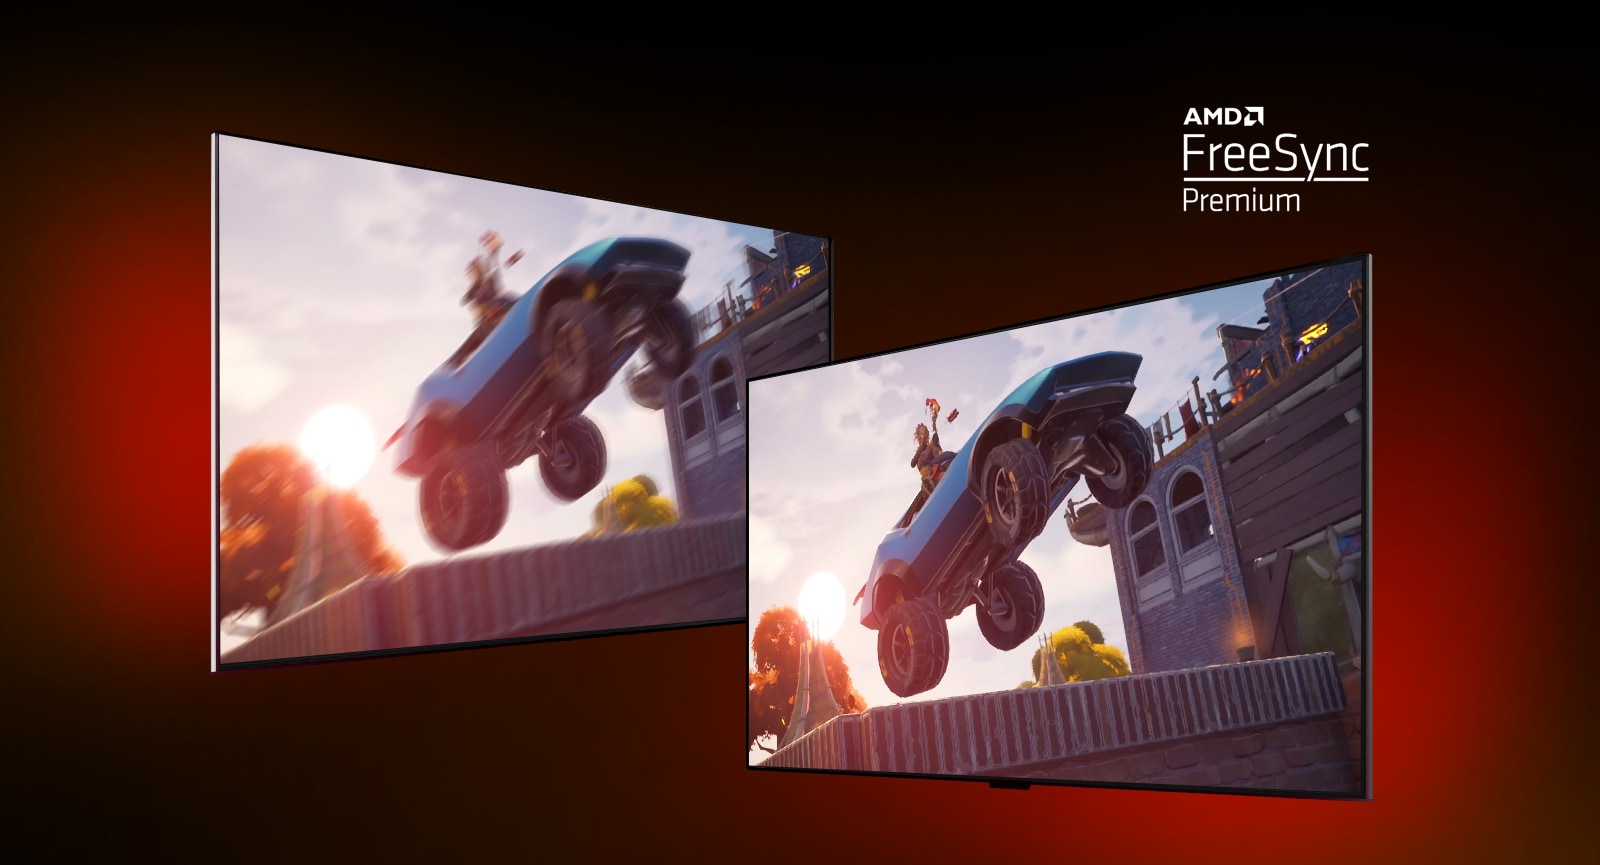 Widać dwa telewizory – ekran po lewej przedstawia grę FORTNITE, a po prawej – scenę z gry wyścigowej. Ponadto po prawej stronie jest ukazana ta sama scena z gry, ale z jaśniejszym i wyraźniejszym obrazem. W prawym górnym rogu znajduje się logo AMD FreeSync premium.  